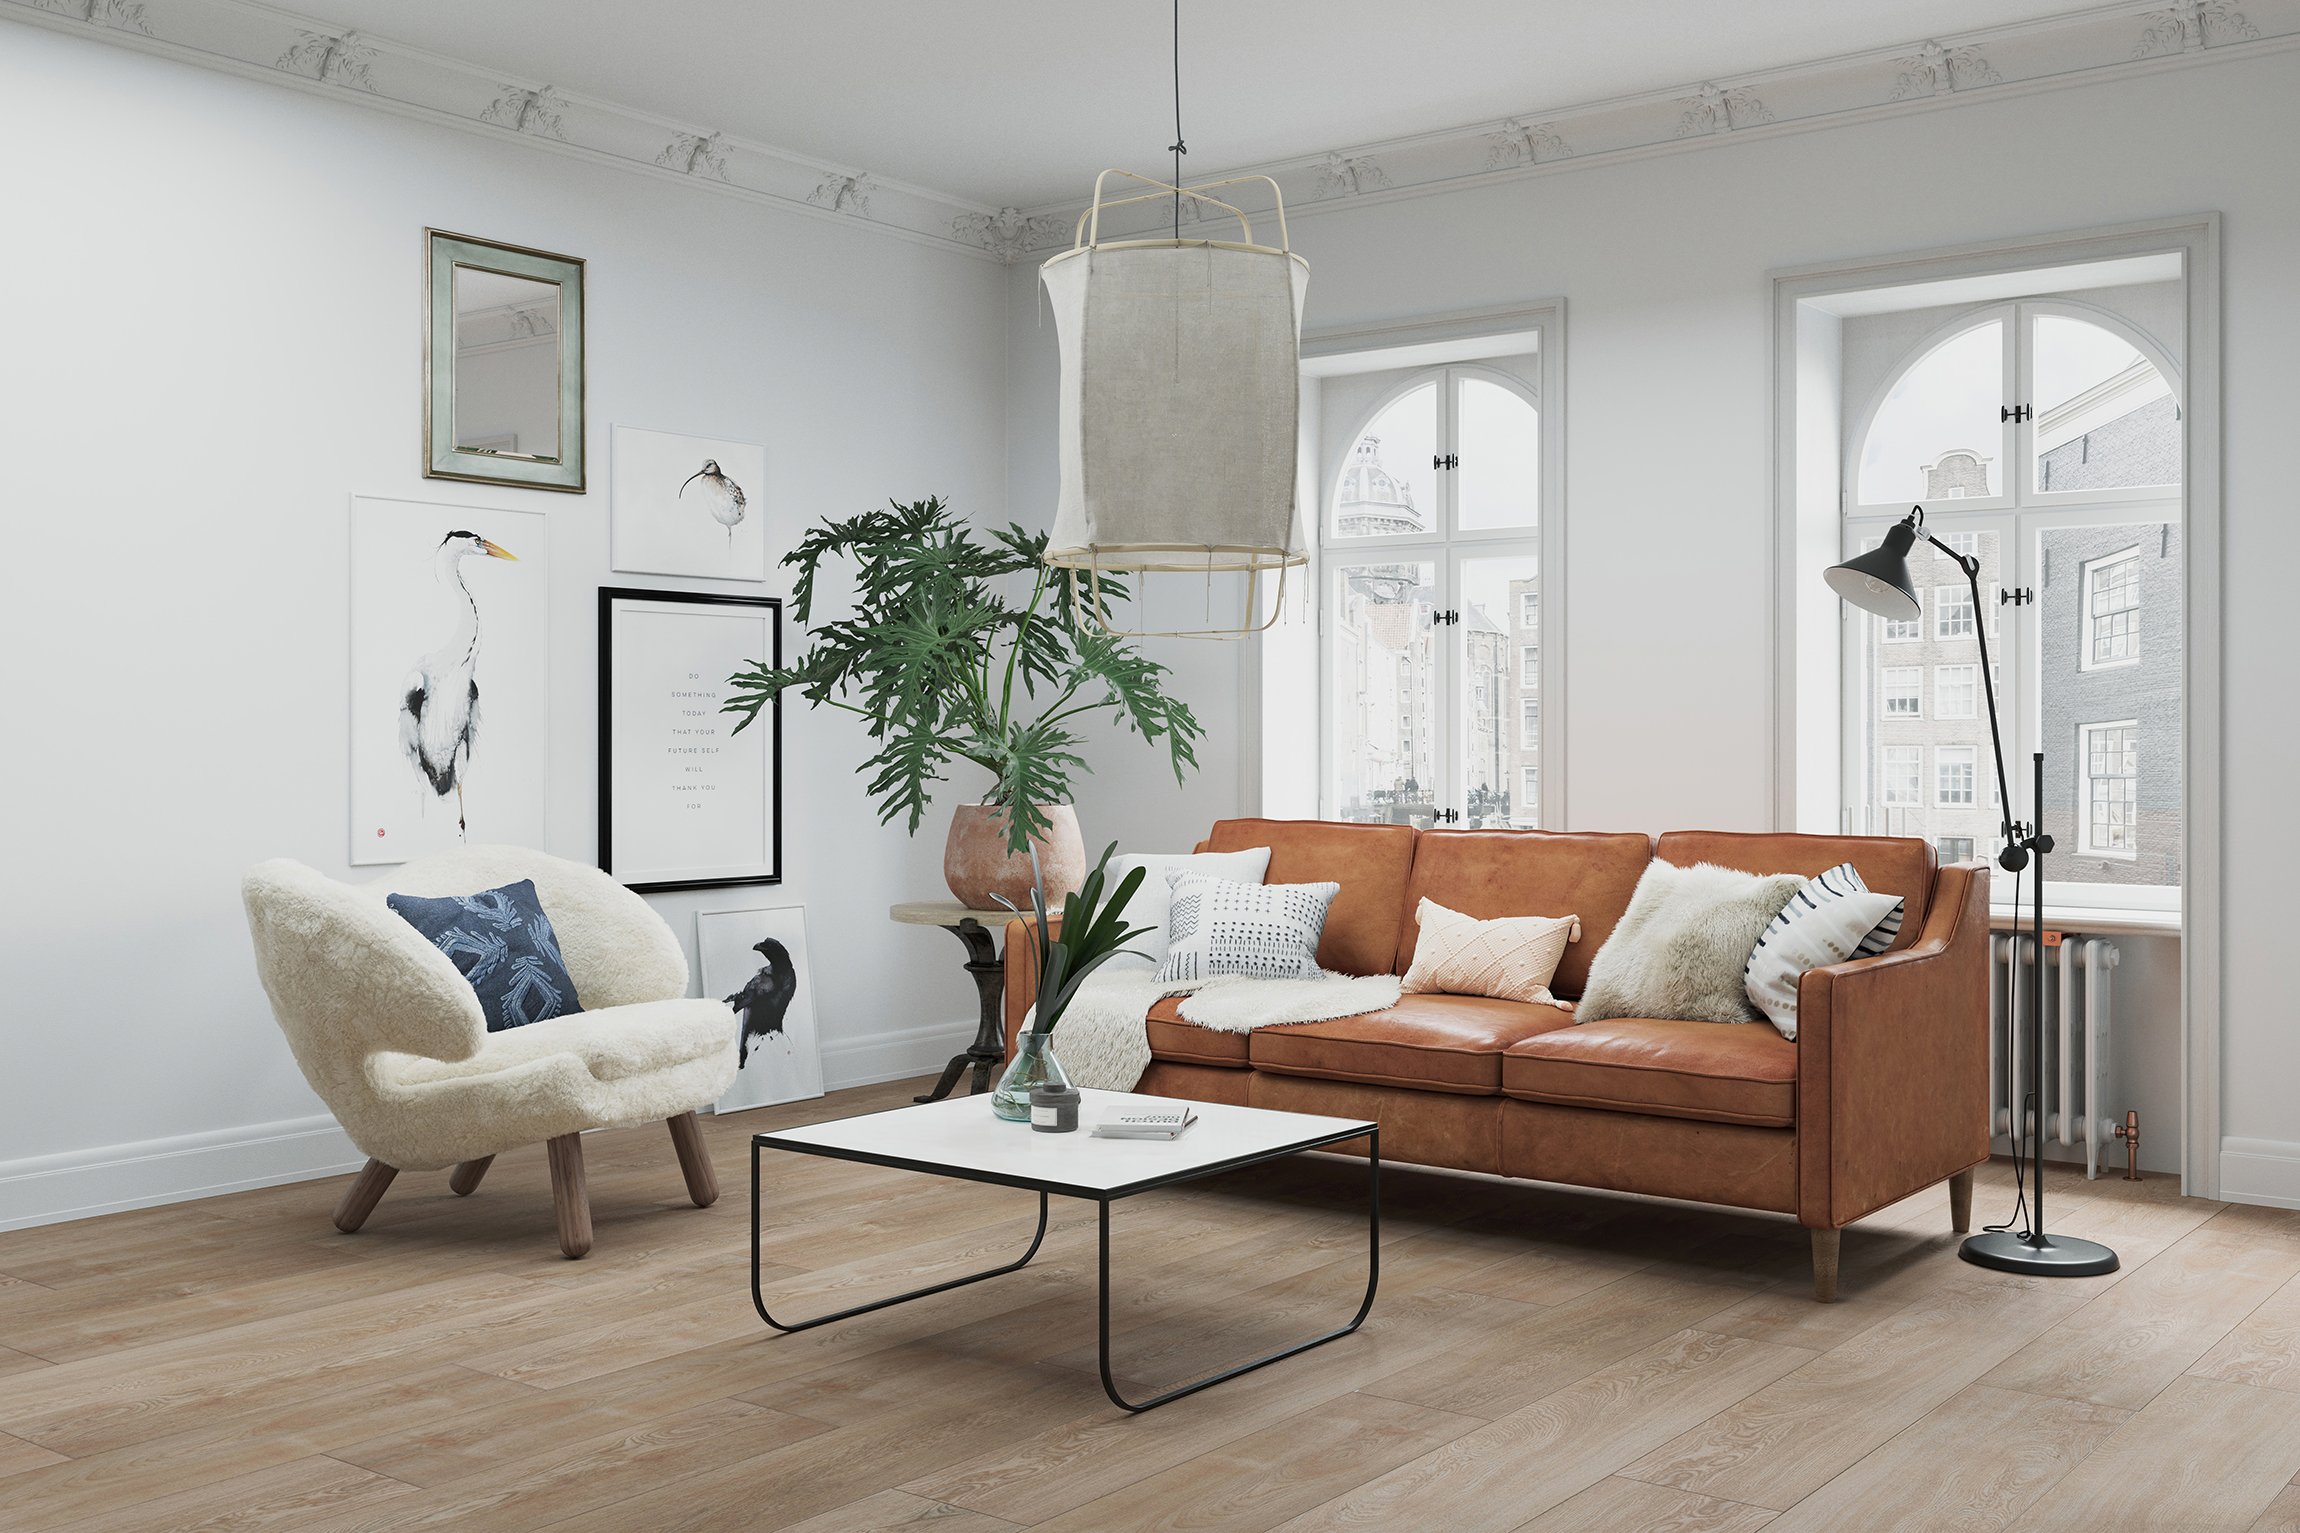 Living Room Zone CG Rendering for Light Wood Floors